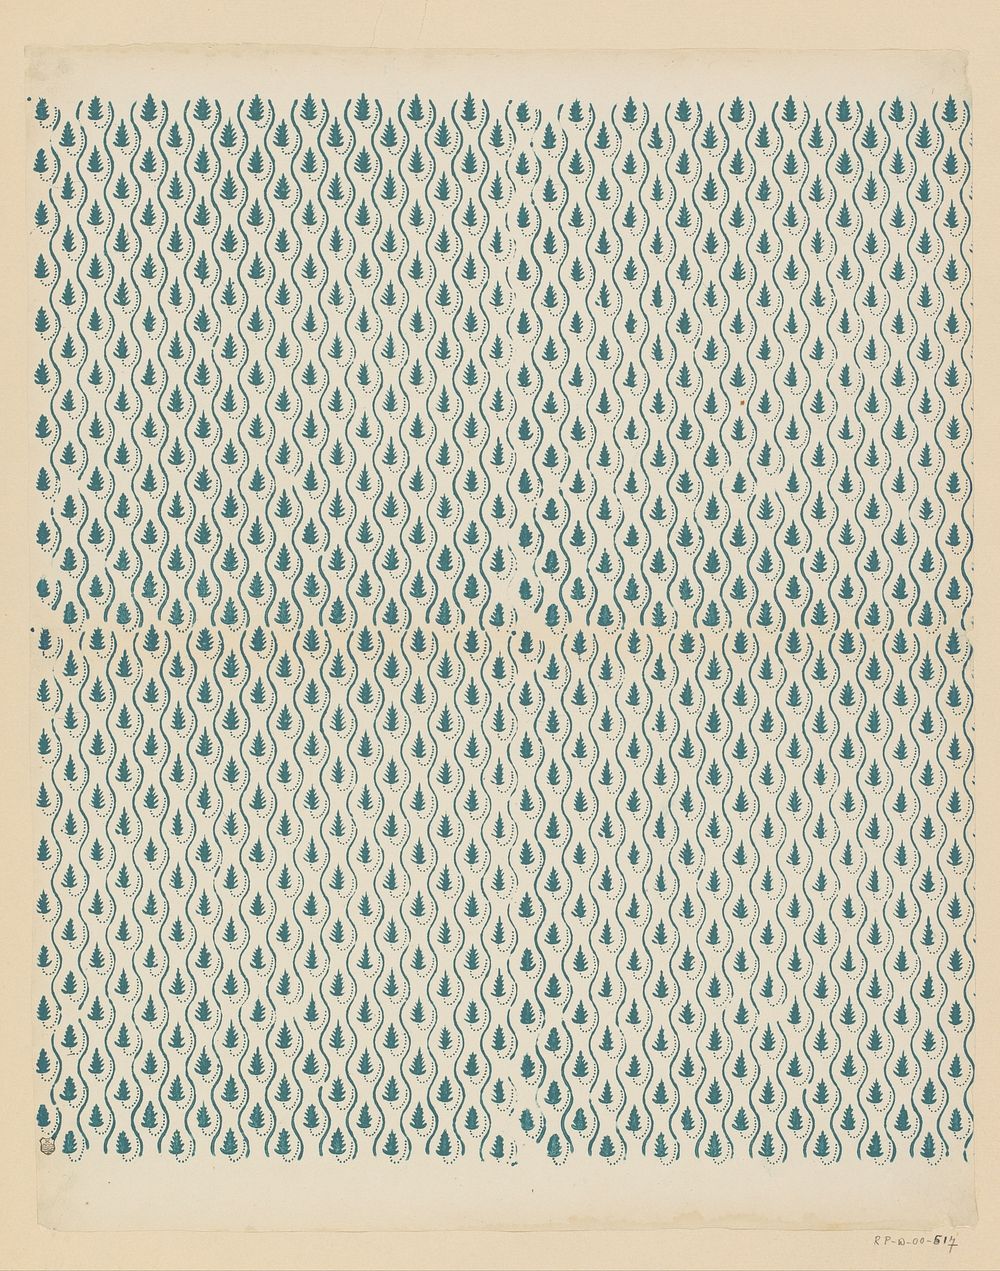 Blad met banenpatroon van bladmotief tussen slingerende lijnen (1800 - 1900) by anonymous